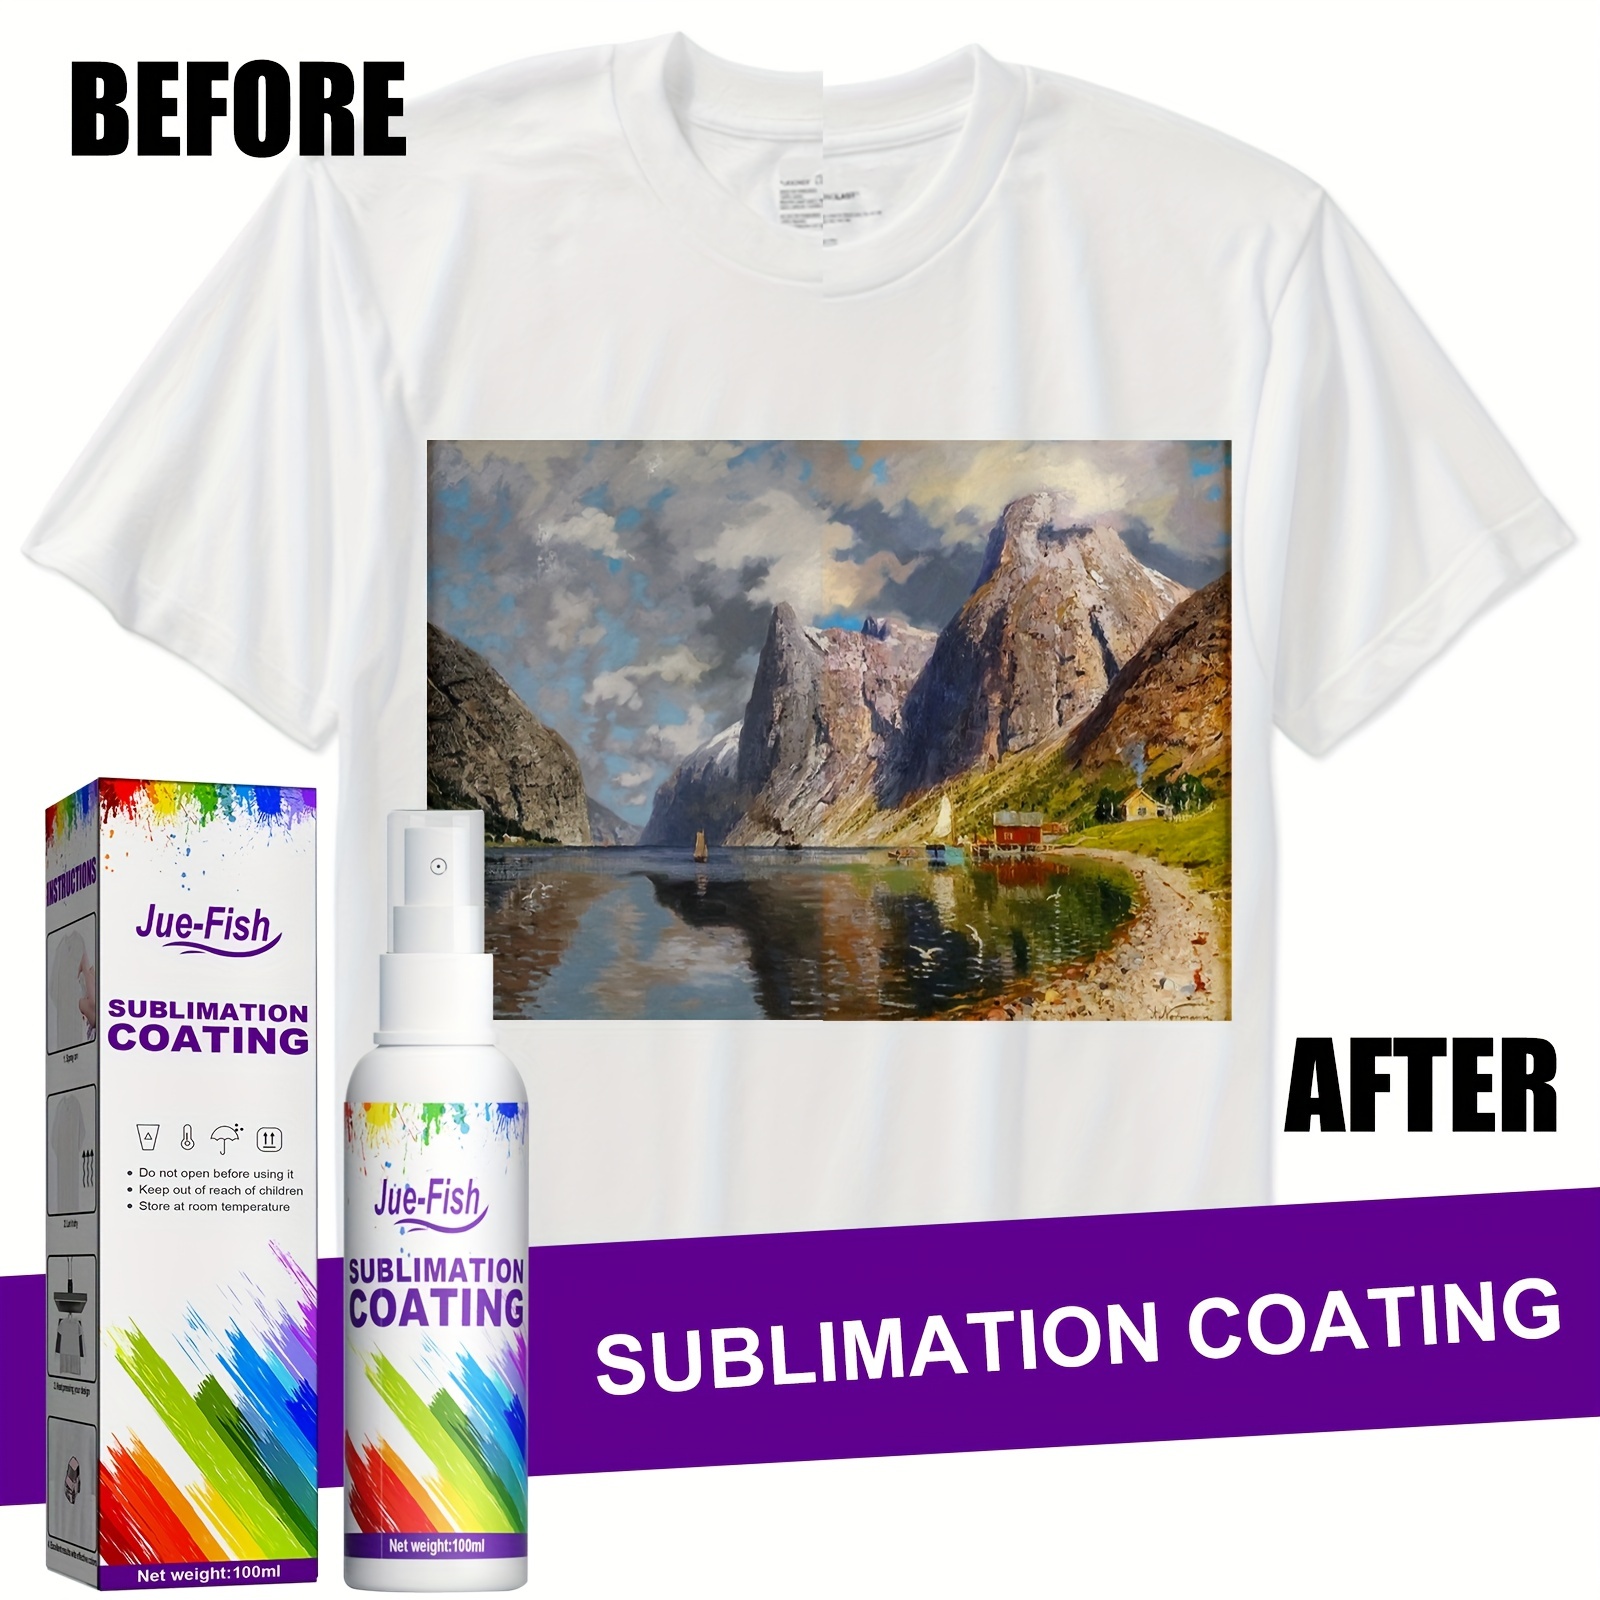 Sublimation Coating